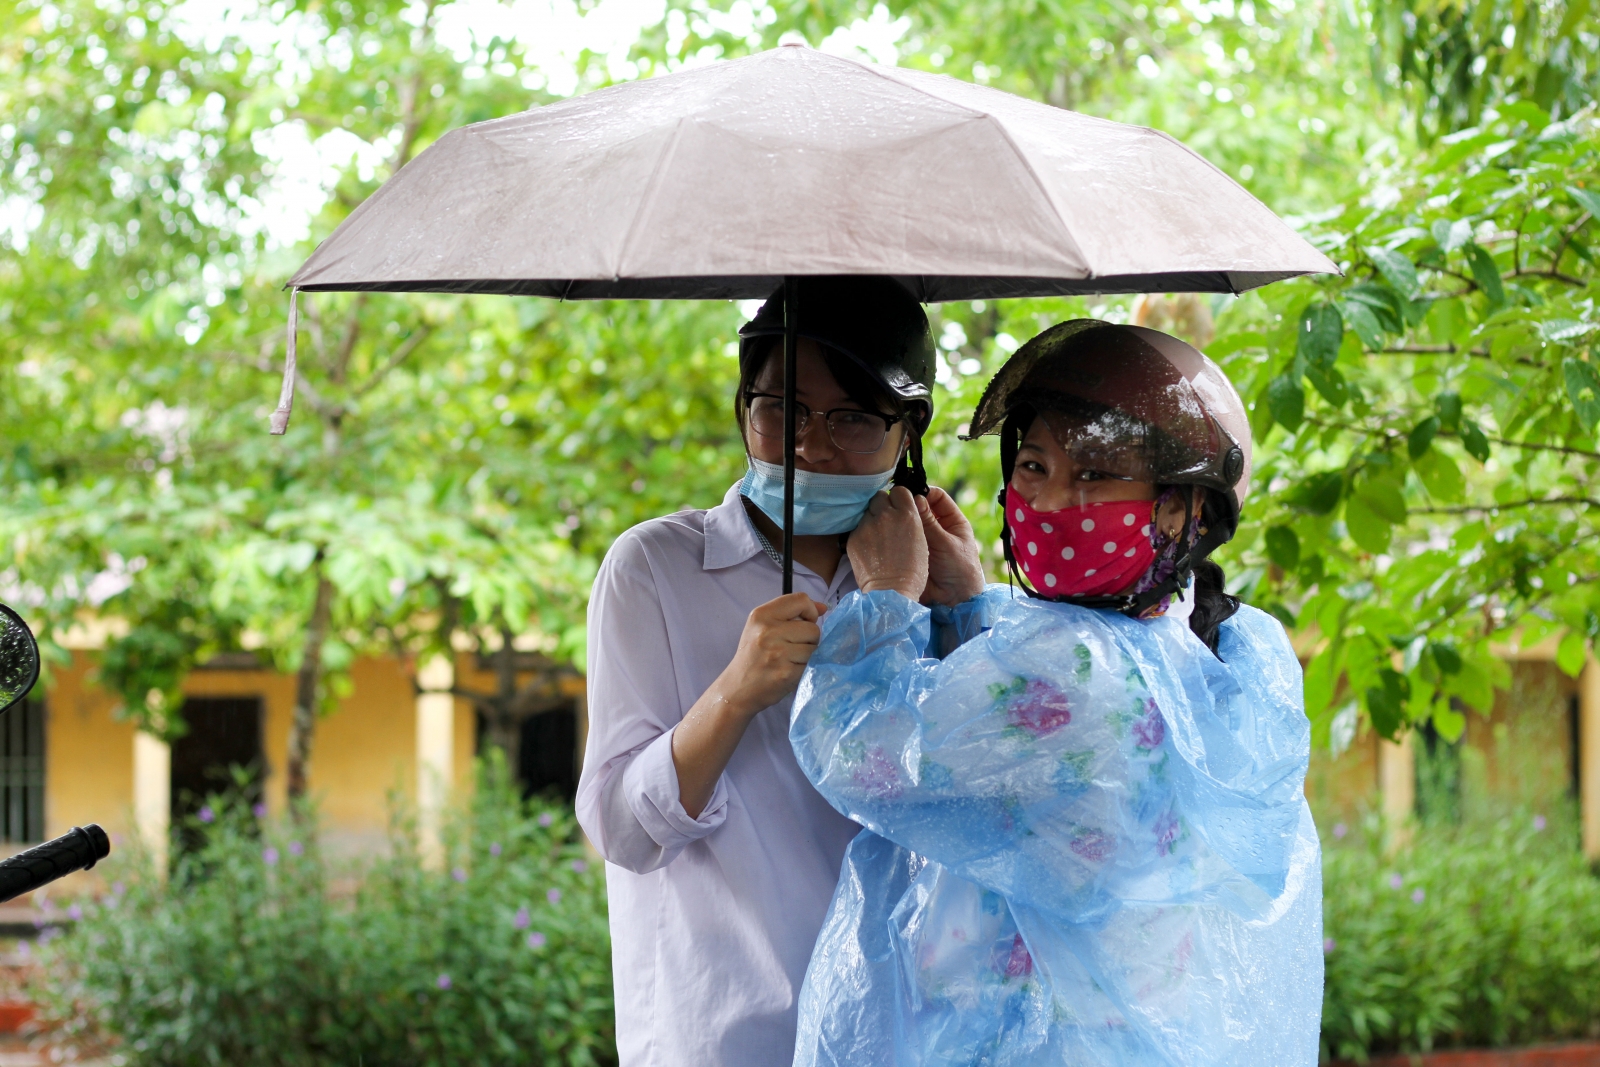 Phụ huynh đội mưa tầm tã đưa con đi thi ở Thái Bình: "Con dù lớn vẫn là con của mẹ..."